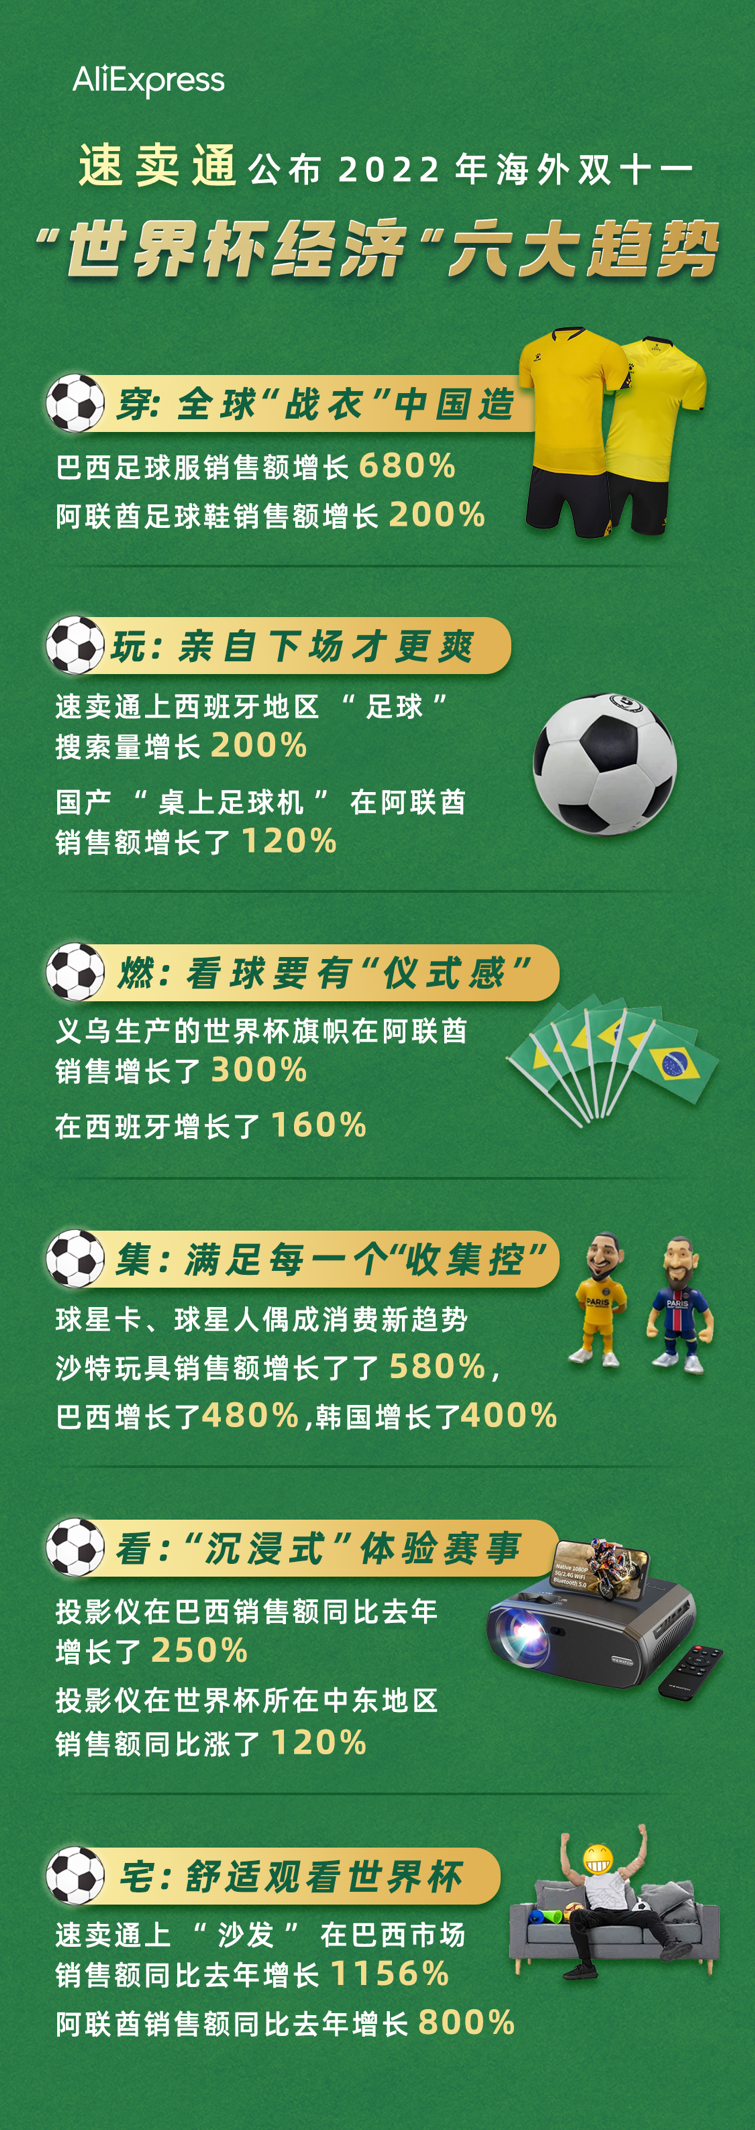 速卖通发布世界杯经济海外消费趋势，巴西消费者带动了中国投影仪2.5倍增长